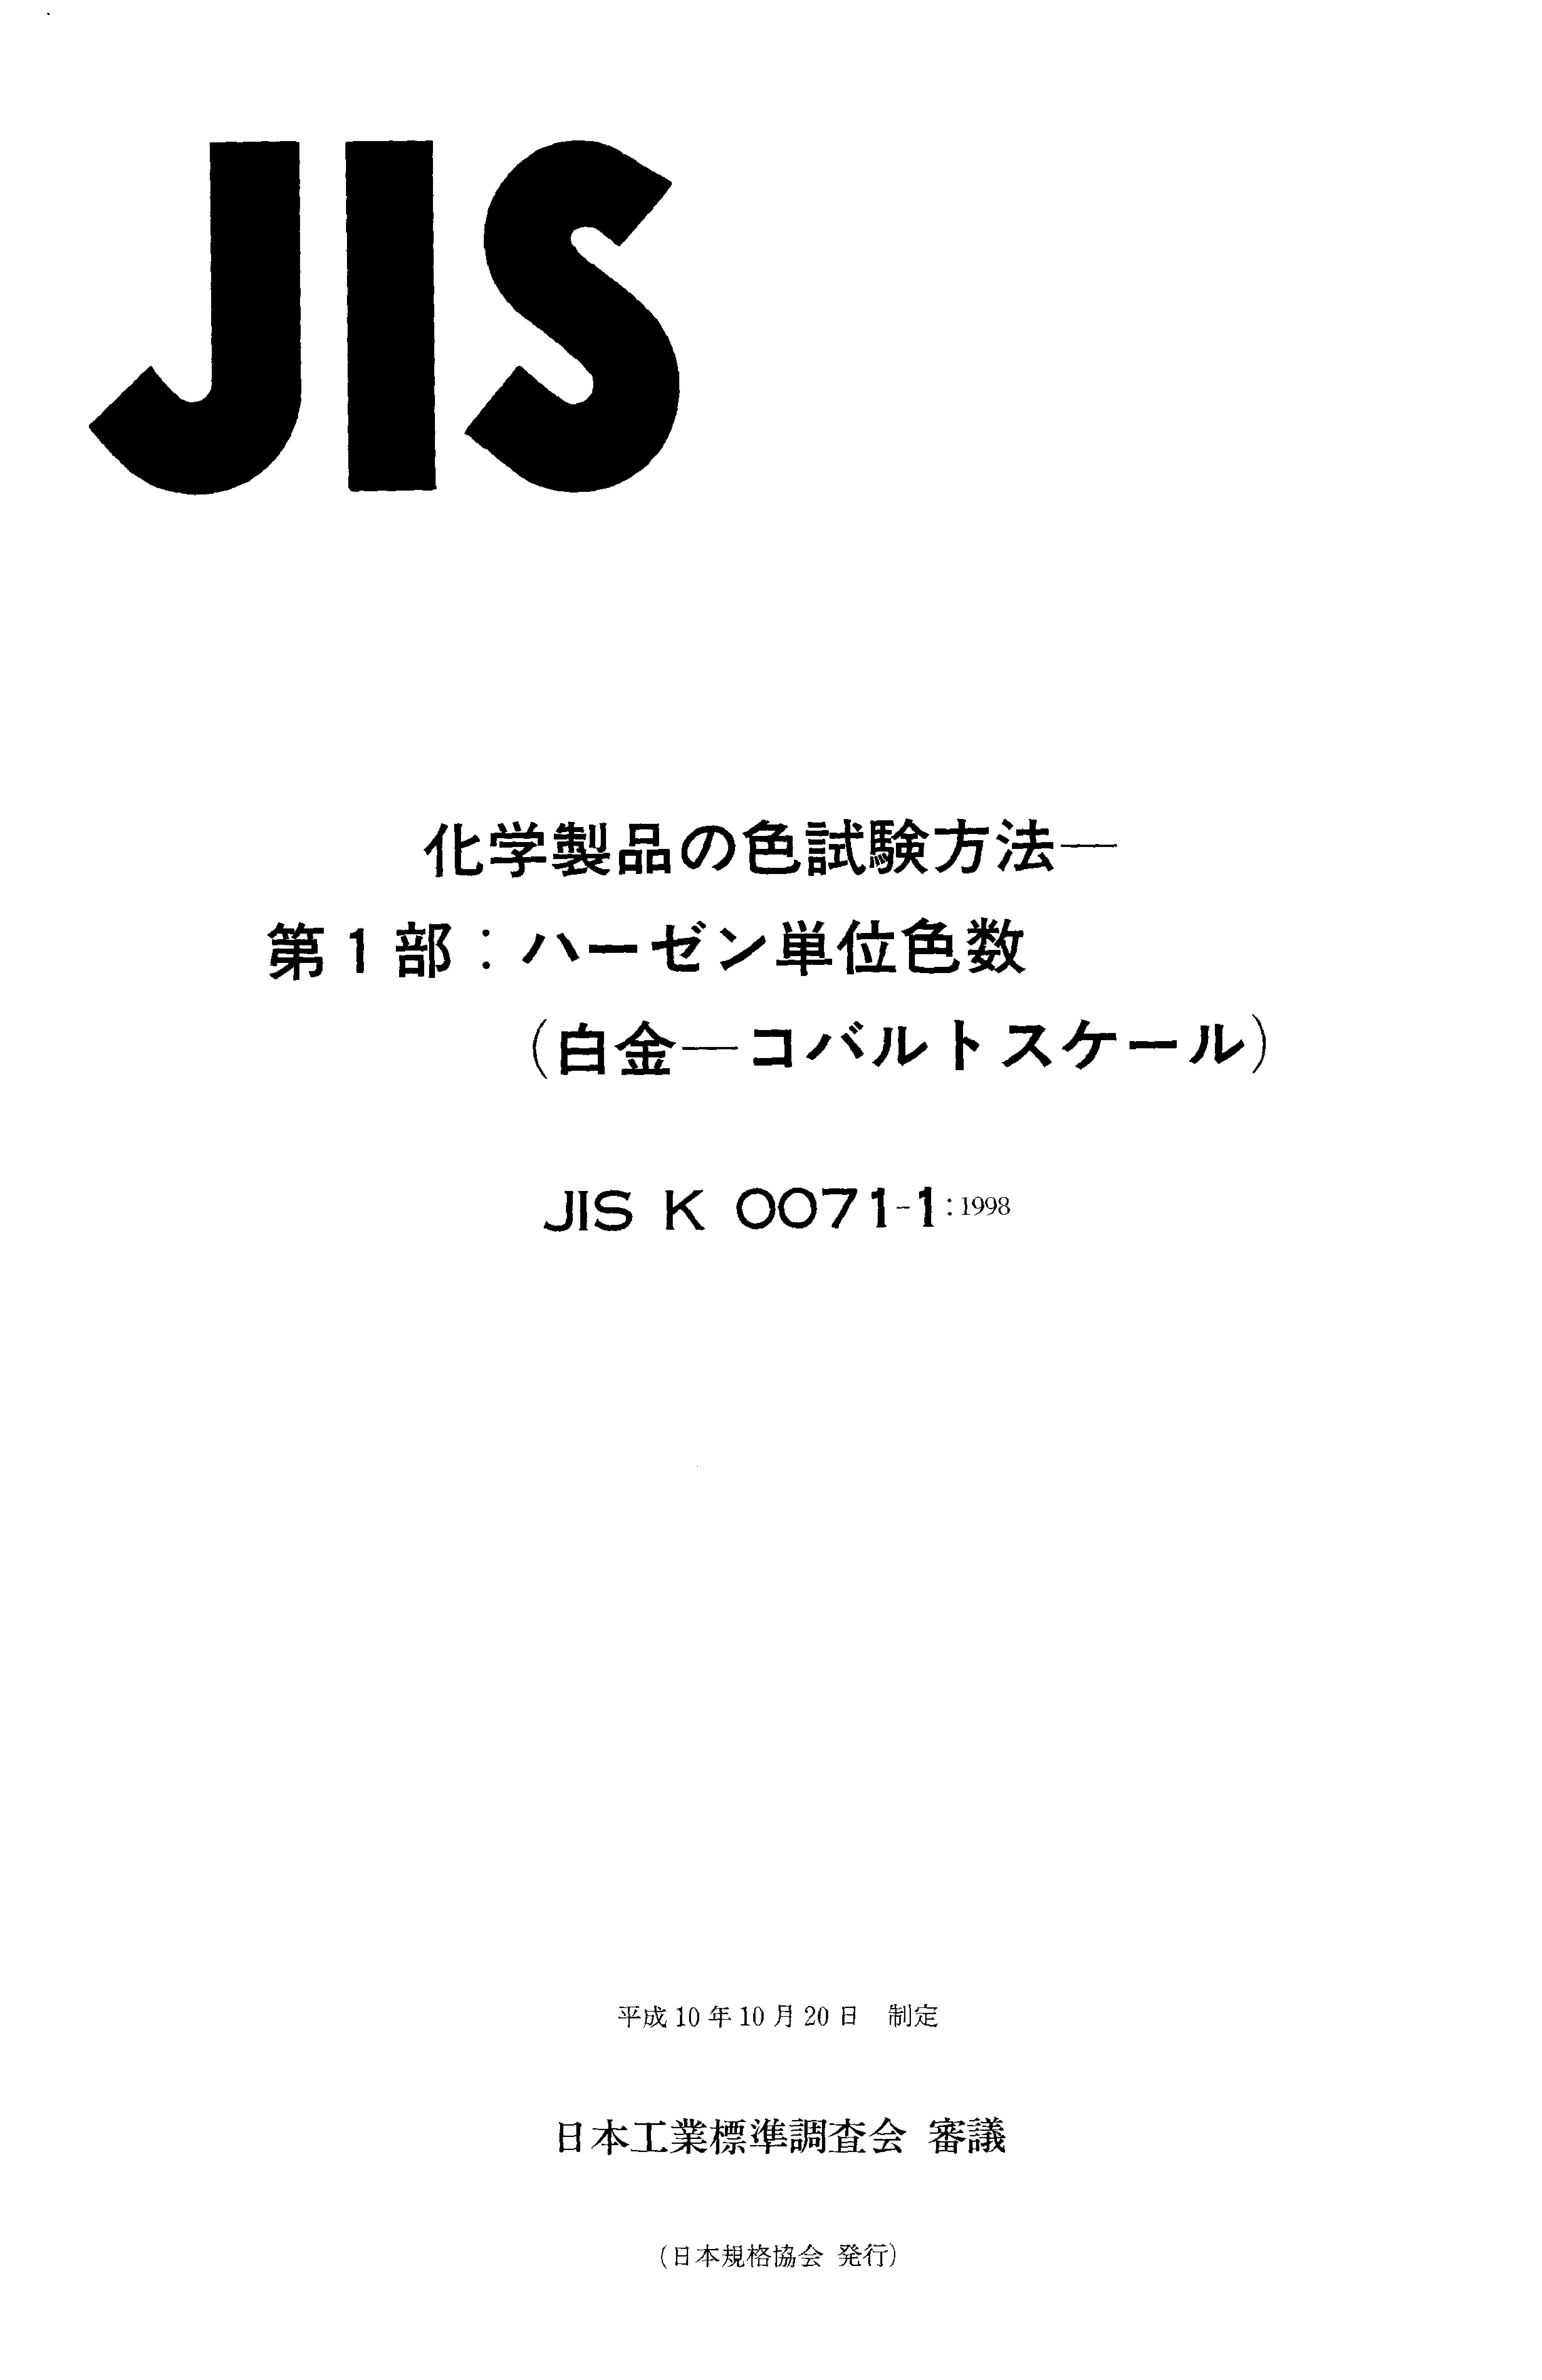 JIS K 0071-1:1998